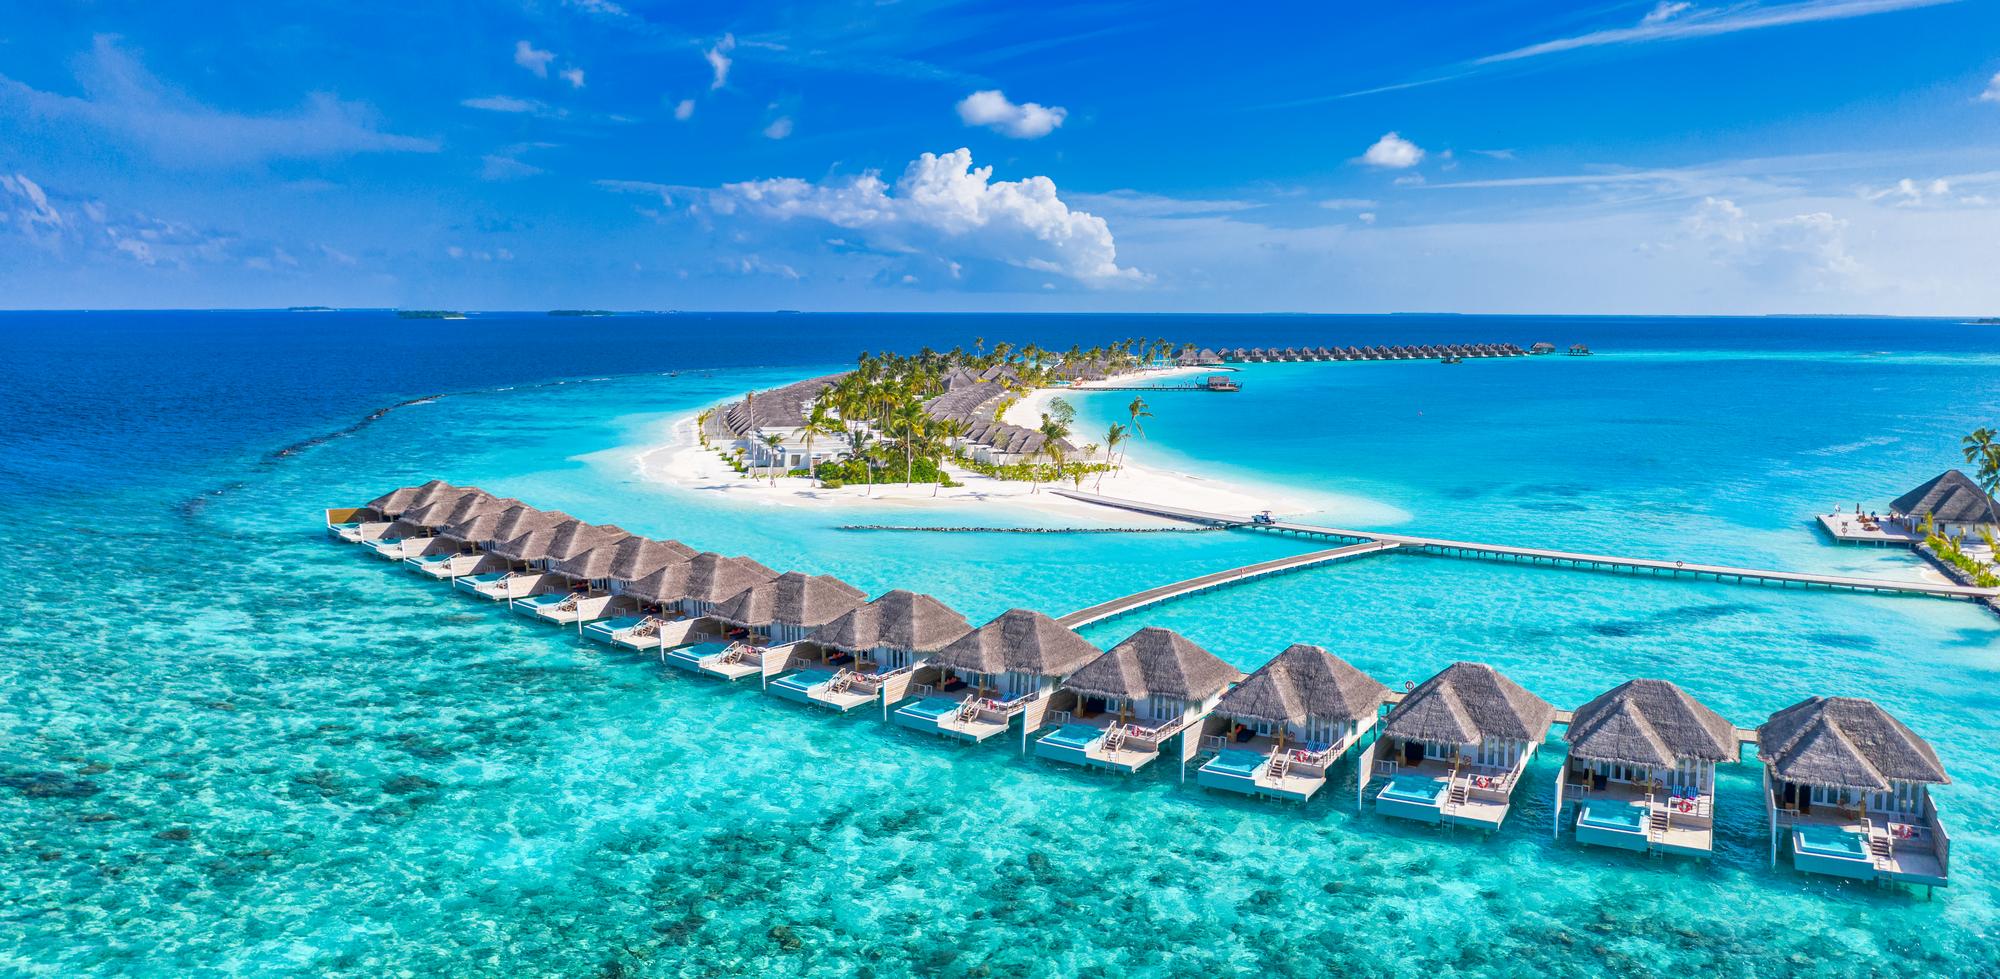 مالدیو کجاست؟ سفر به مالدیو از صفر تا صد | مجله سفر و گردشگری تورمس